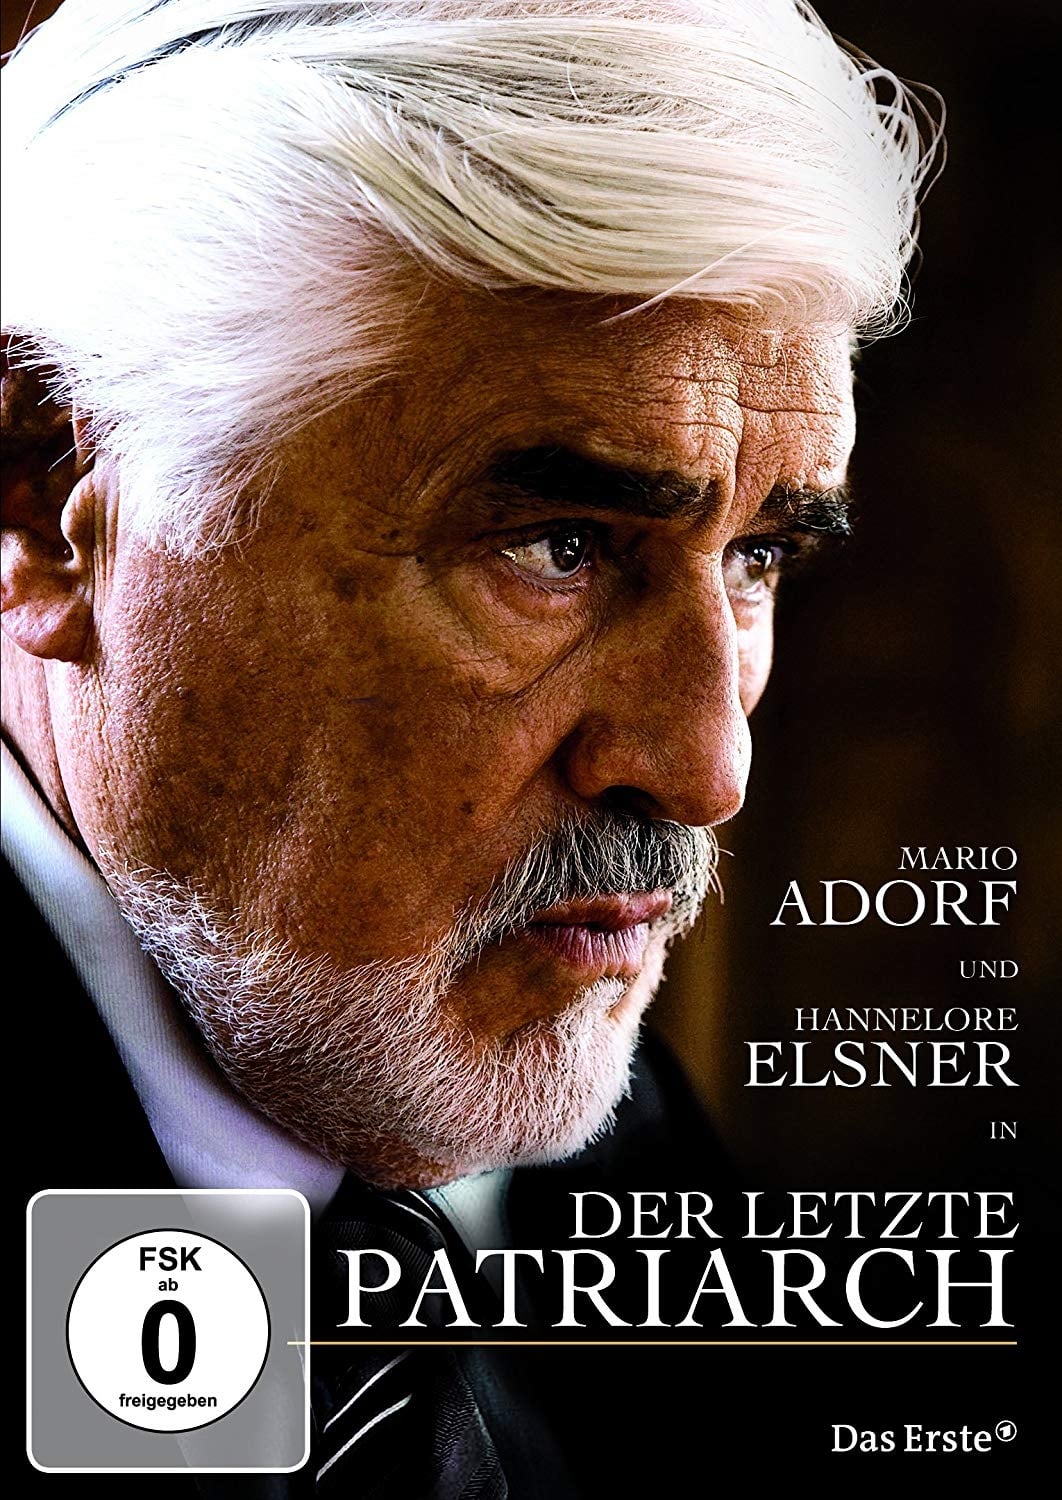 Der letzte Patriarch (2010)